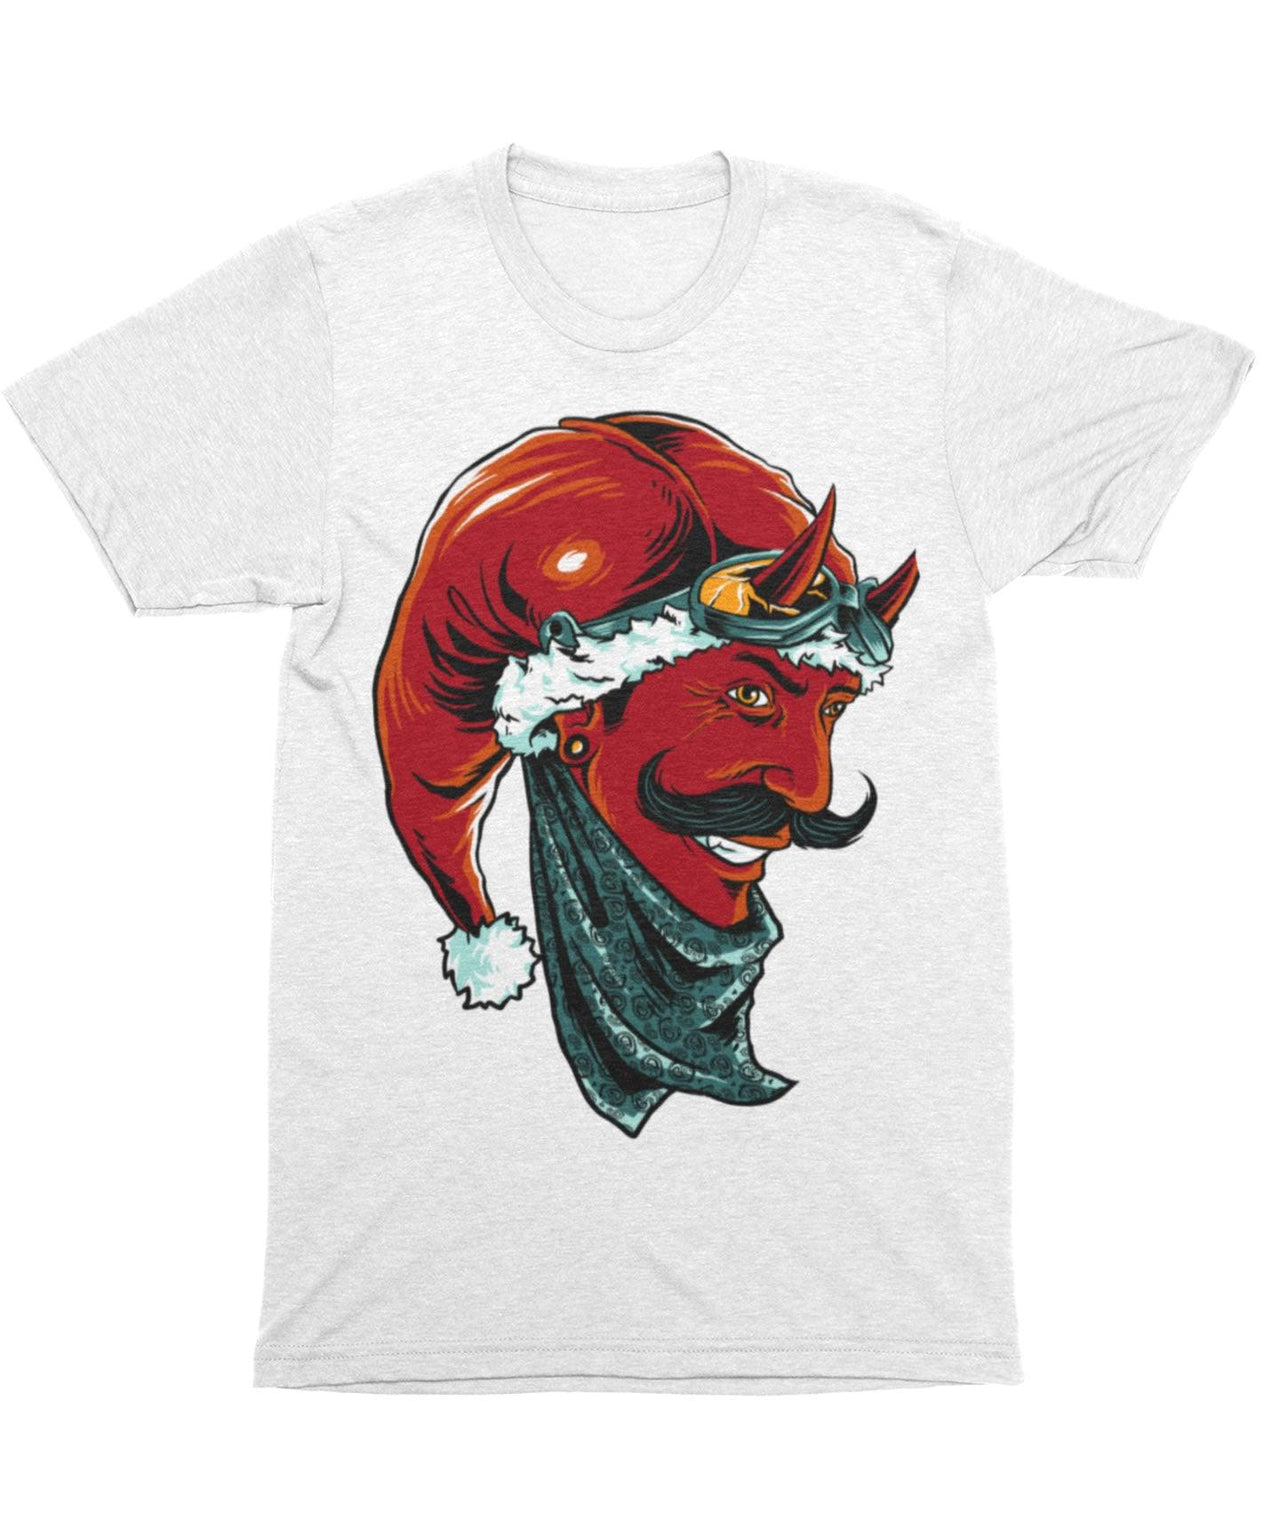 Devil Santa, Unisex Christmas Unisex T-Shirt For Men And Women 8Ball